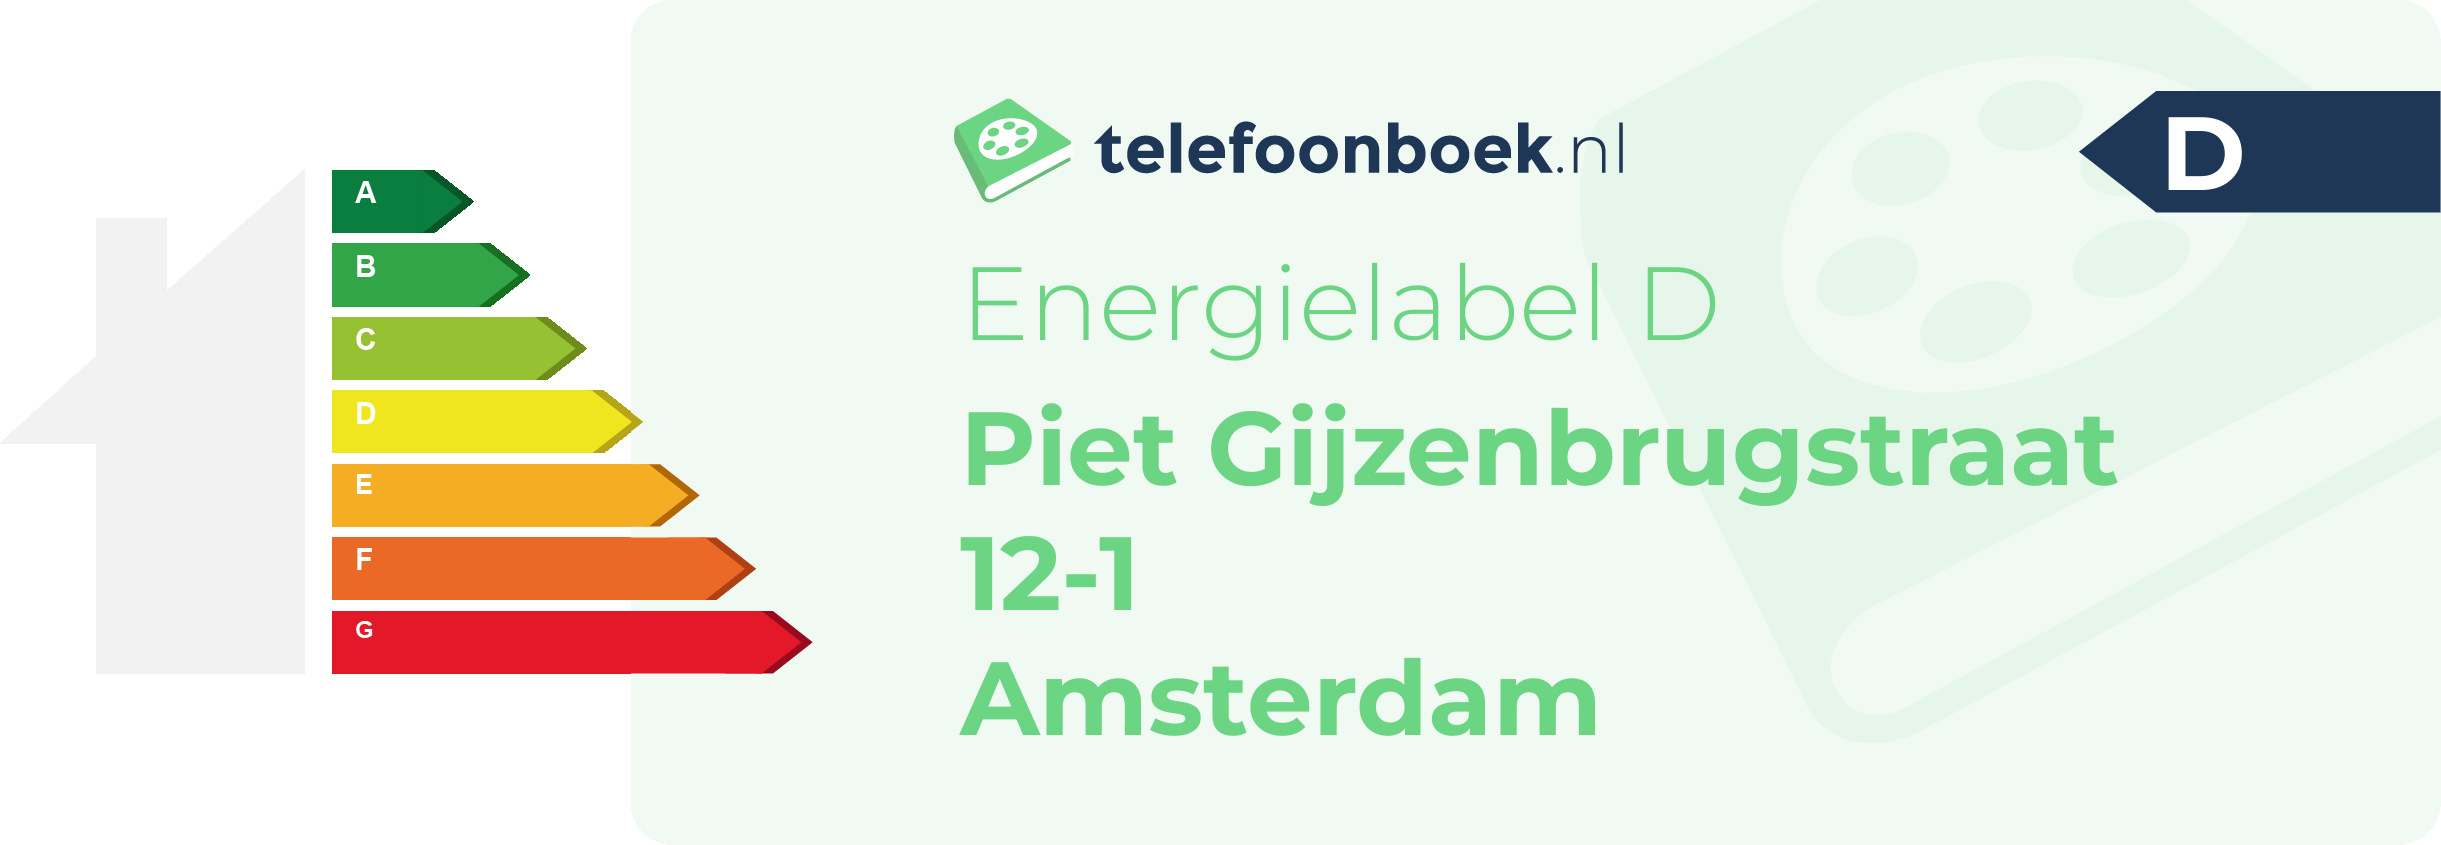 Energielabel Piet Gijzenbrugstraat 12-1 Amsterdam